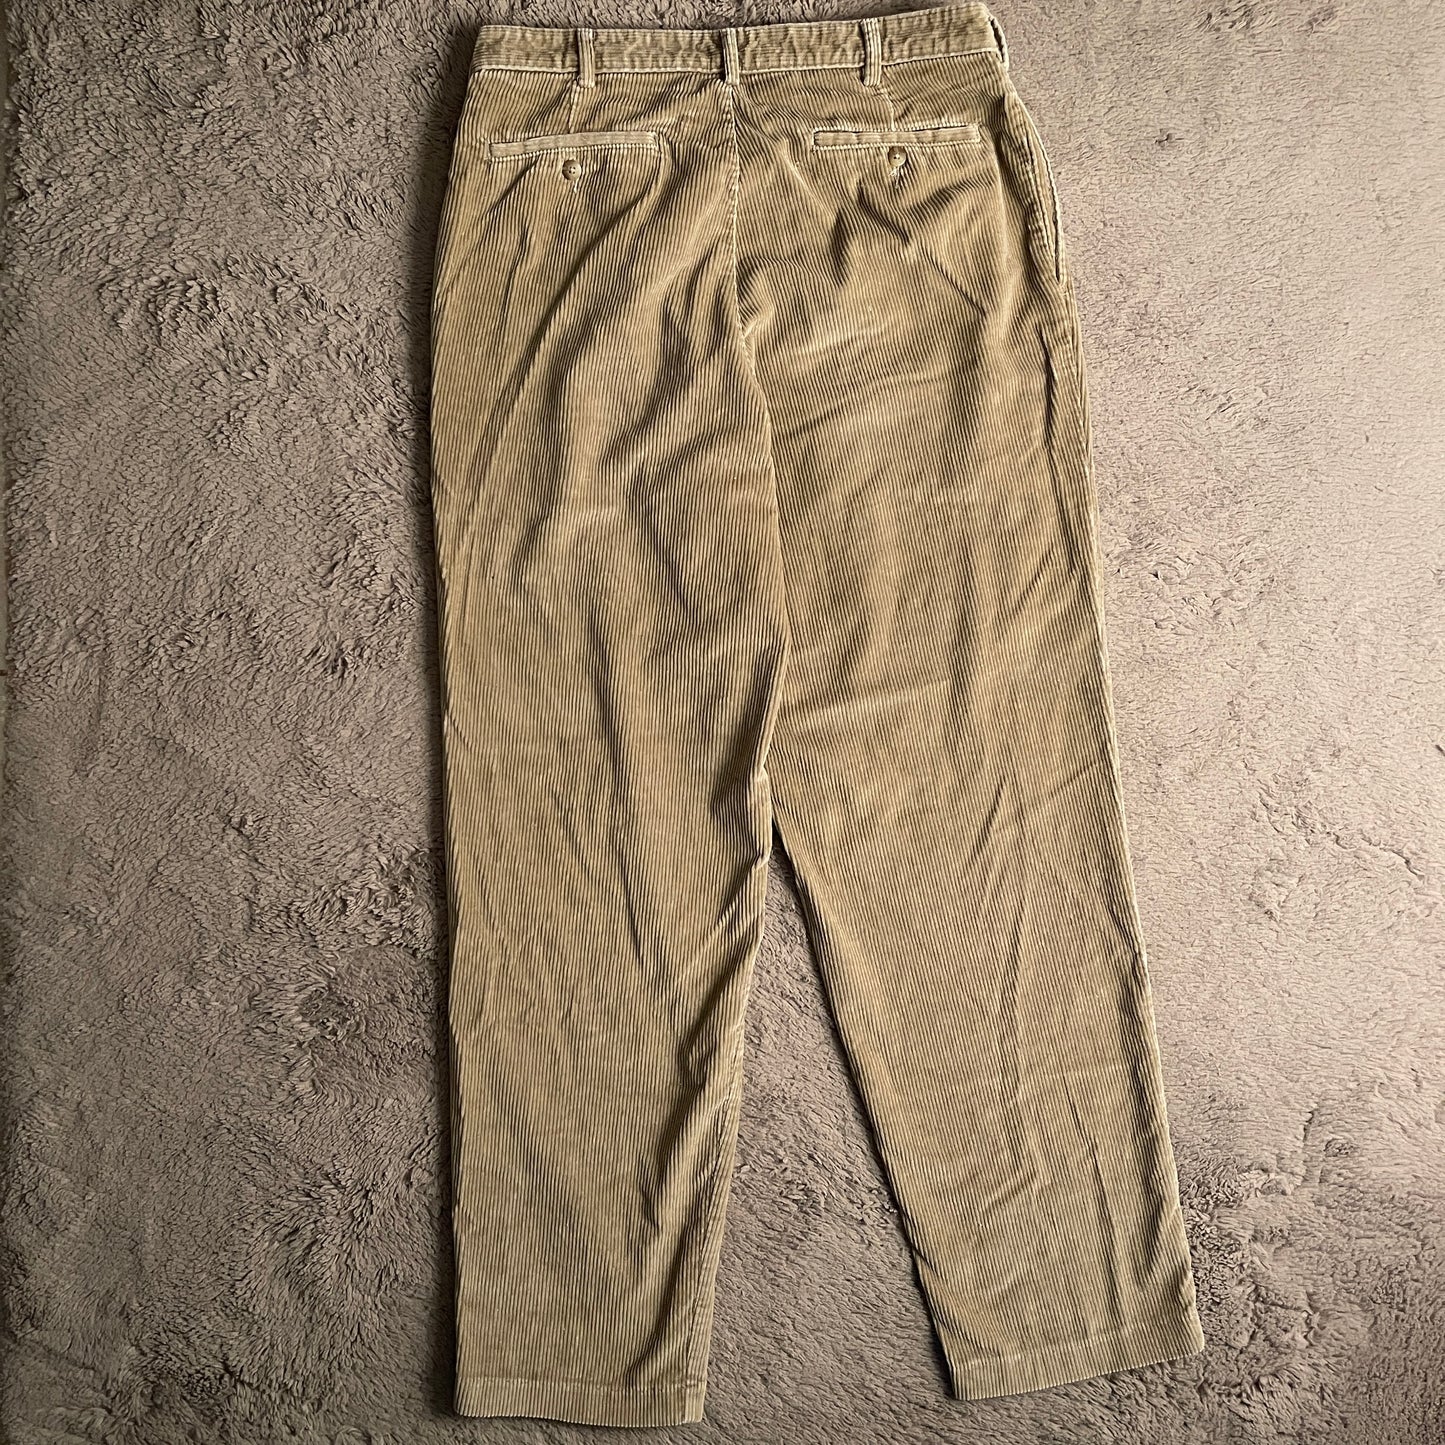 Khaki Corduroy Pants (W33xL44)